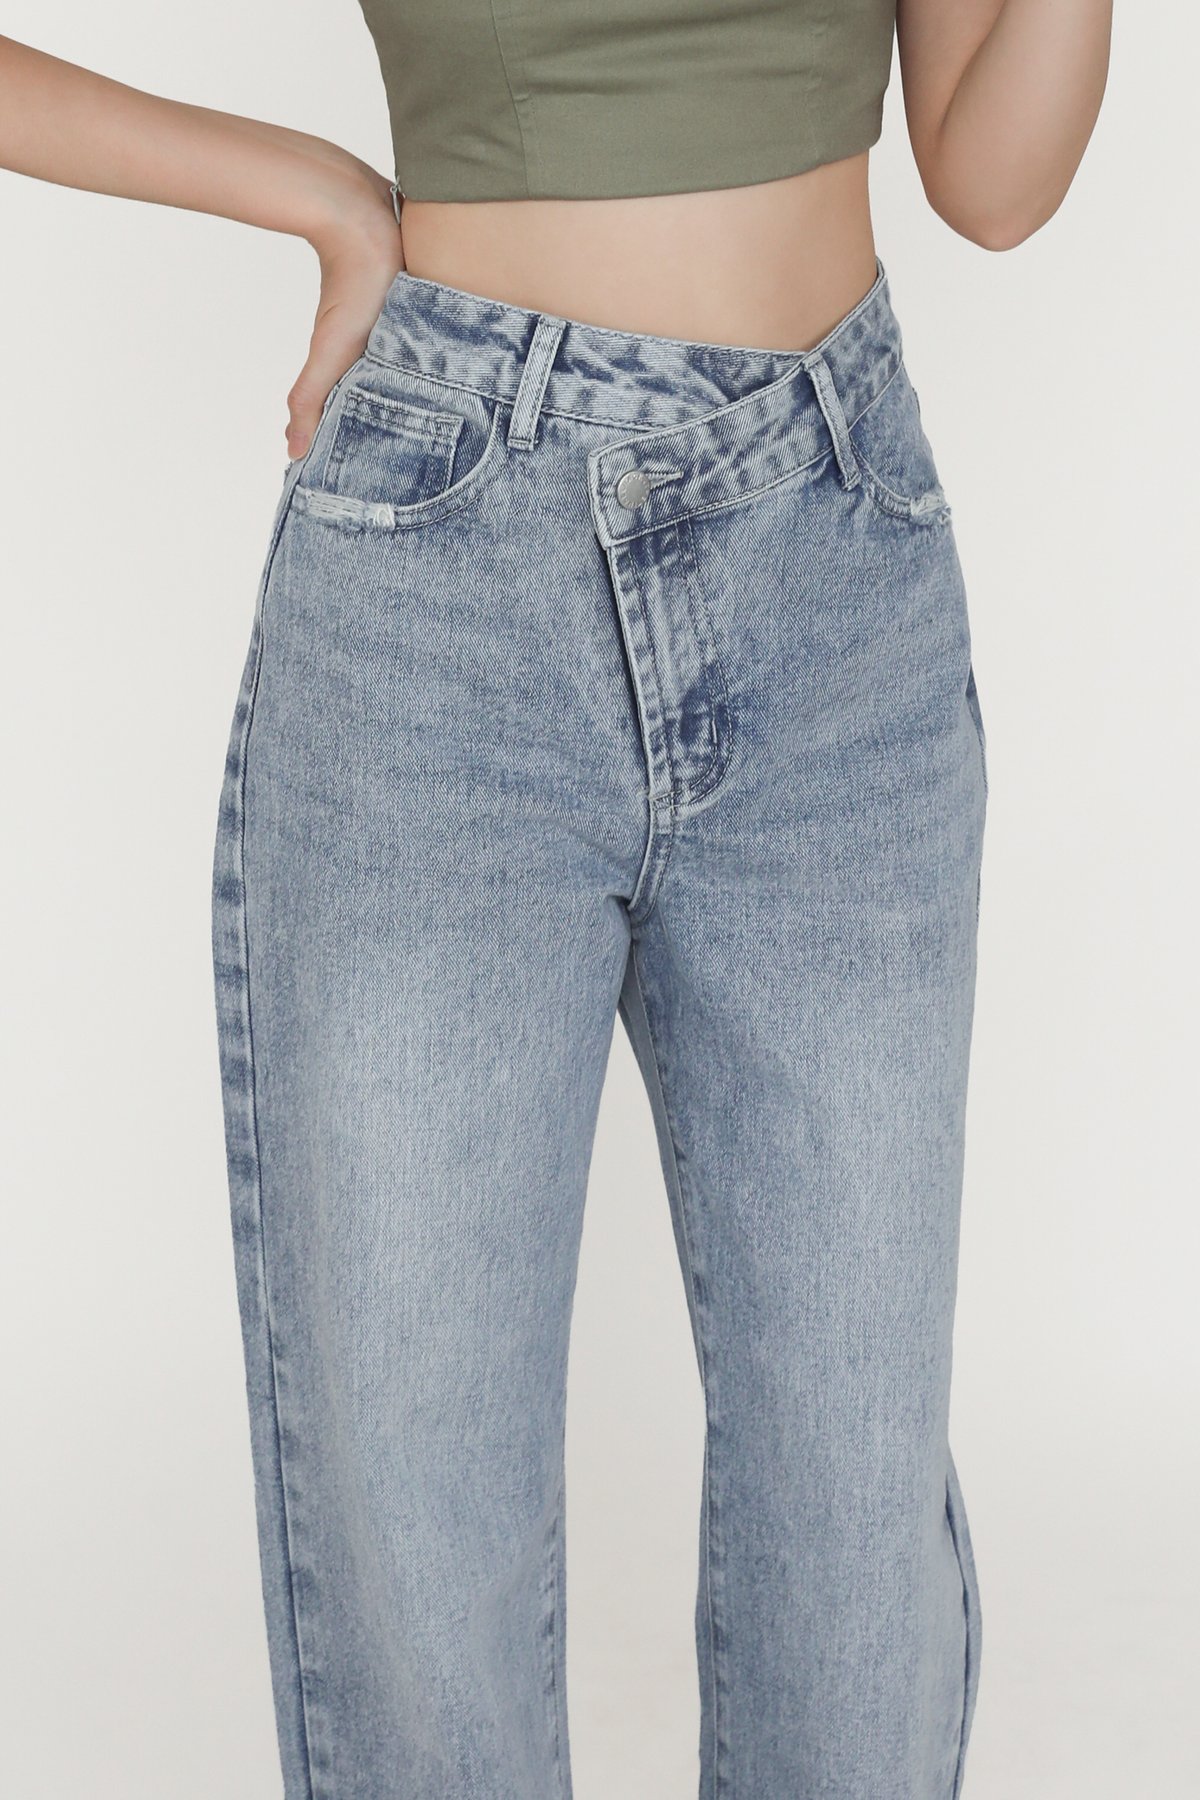 Callum Asymmetrical Denim Jeans (Mid Wash)